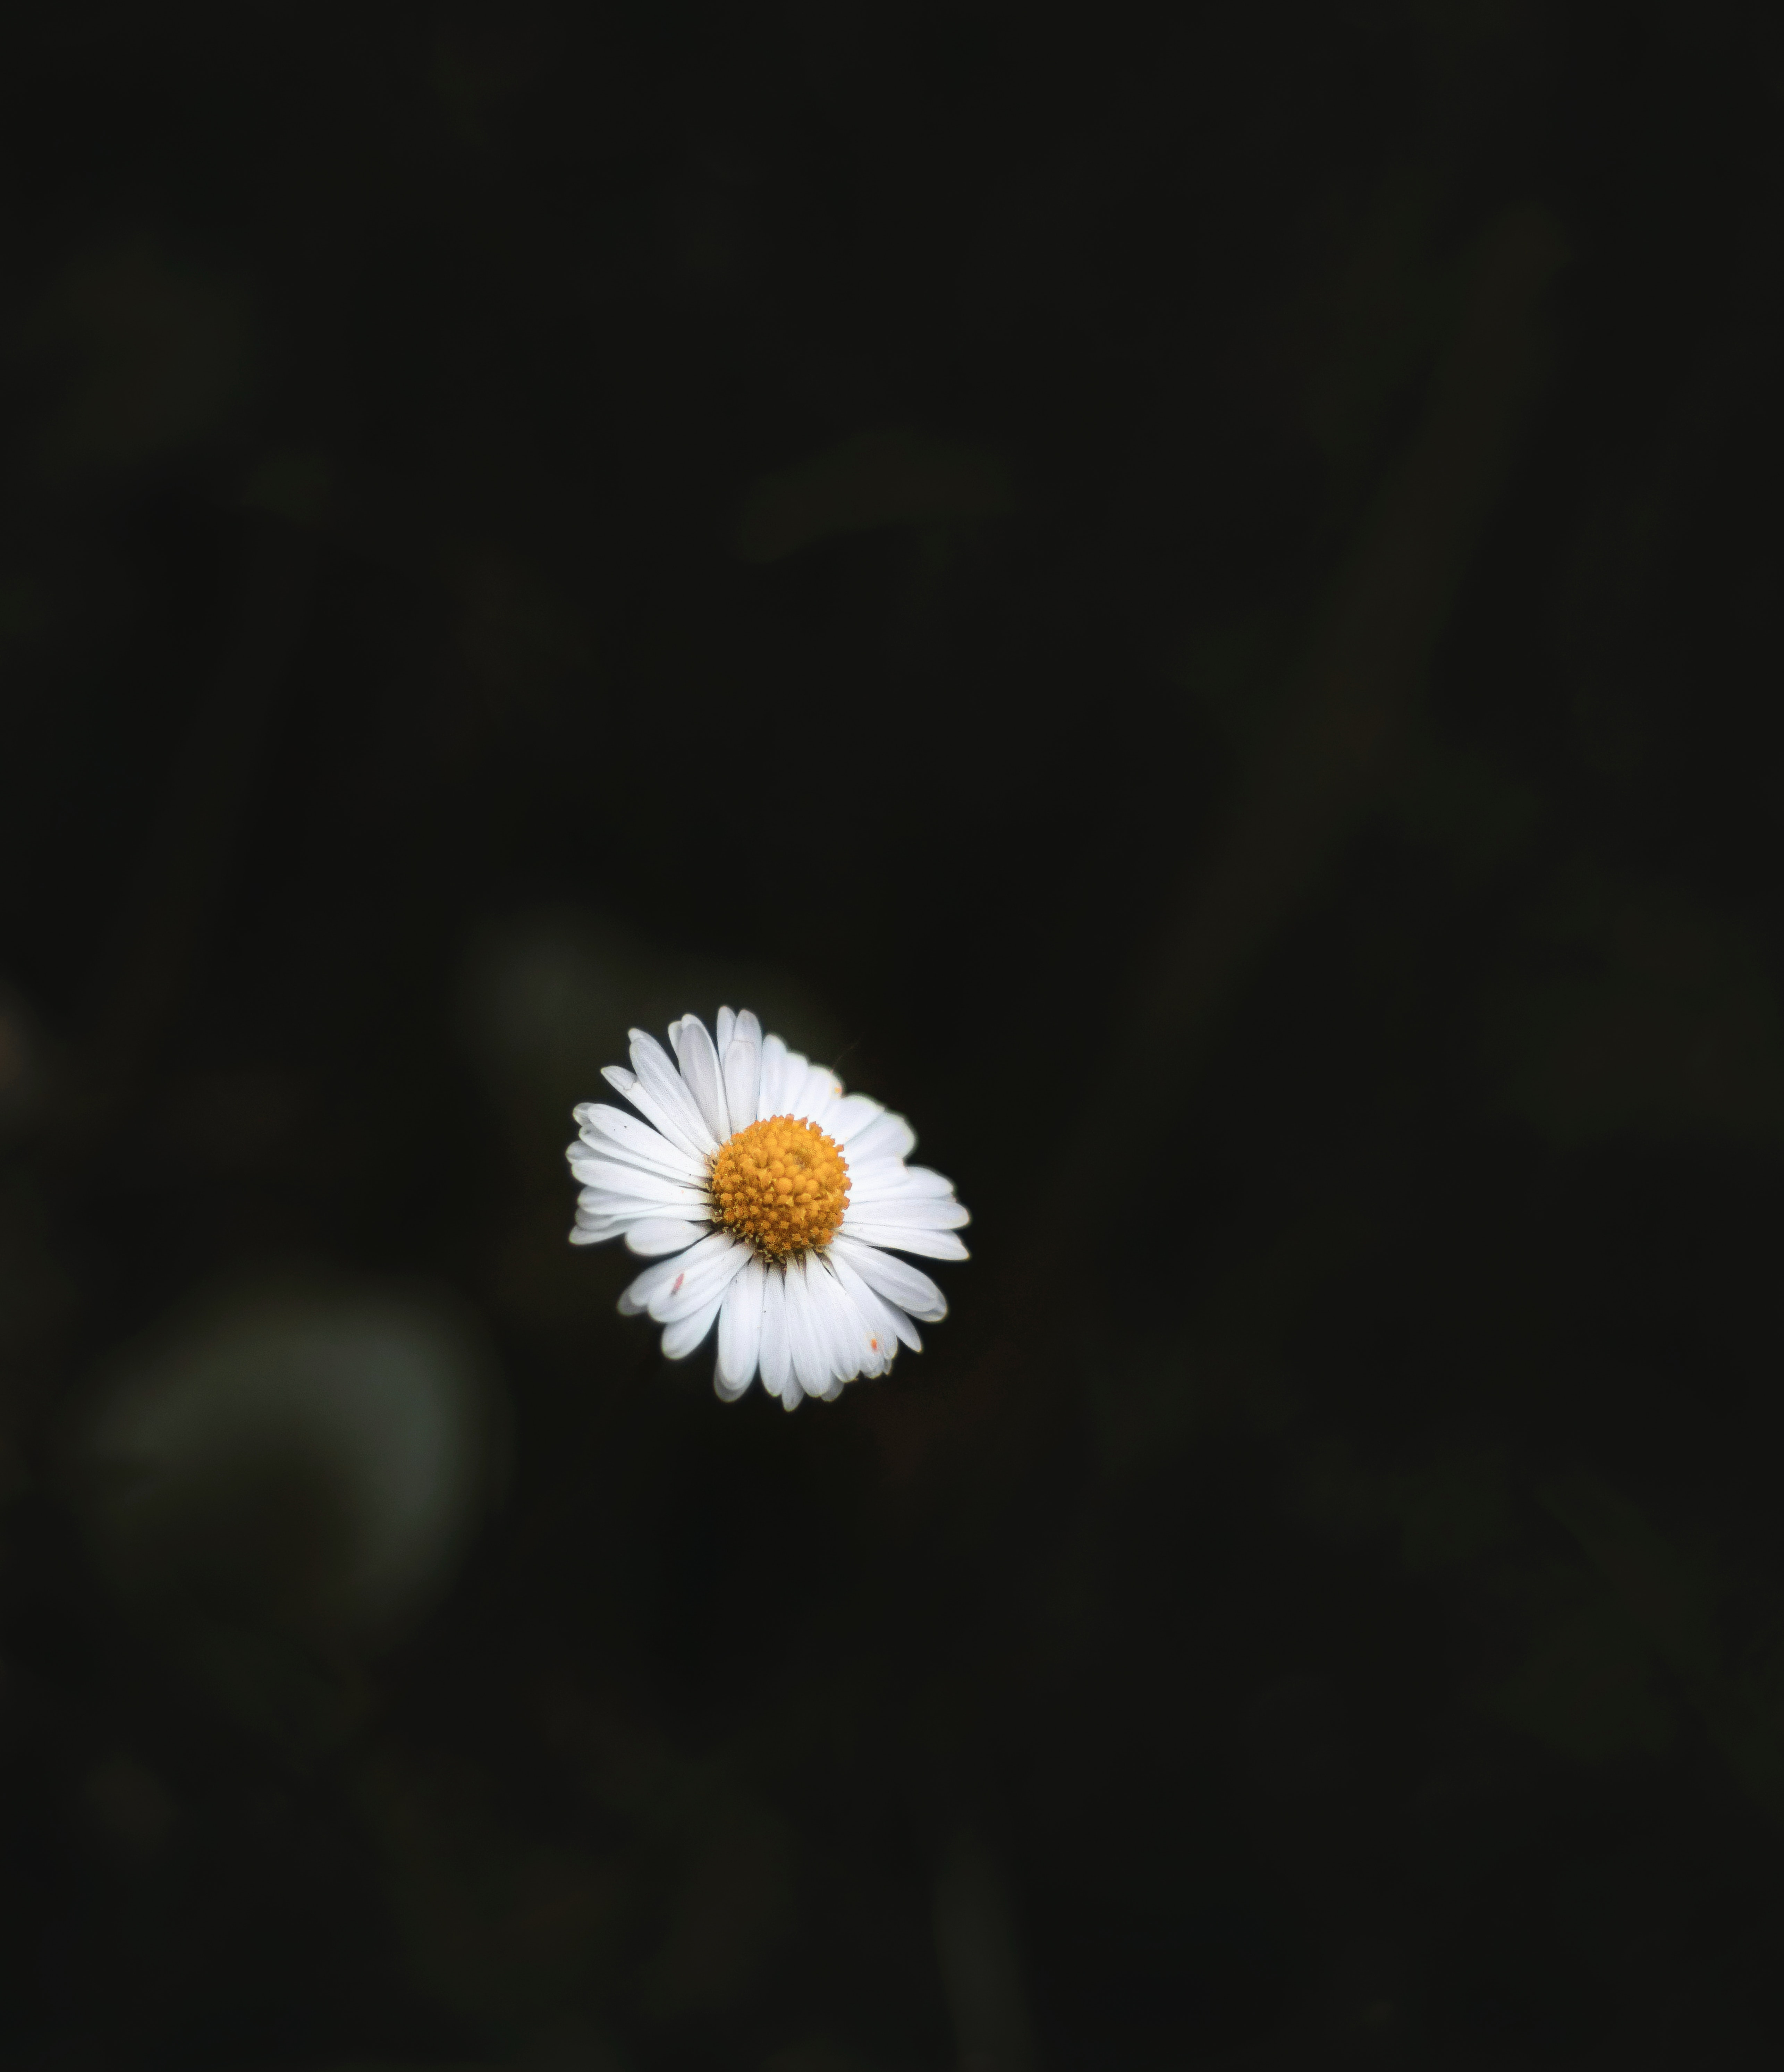 White Daisy Flower in Dark Background · Free